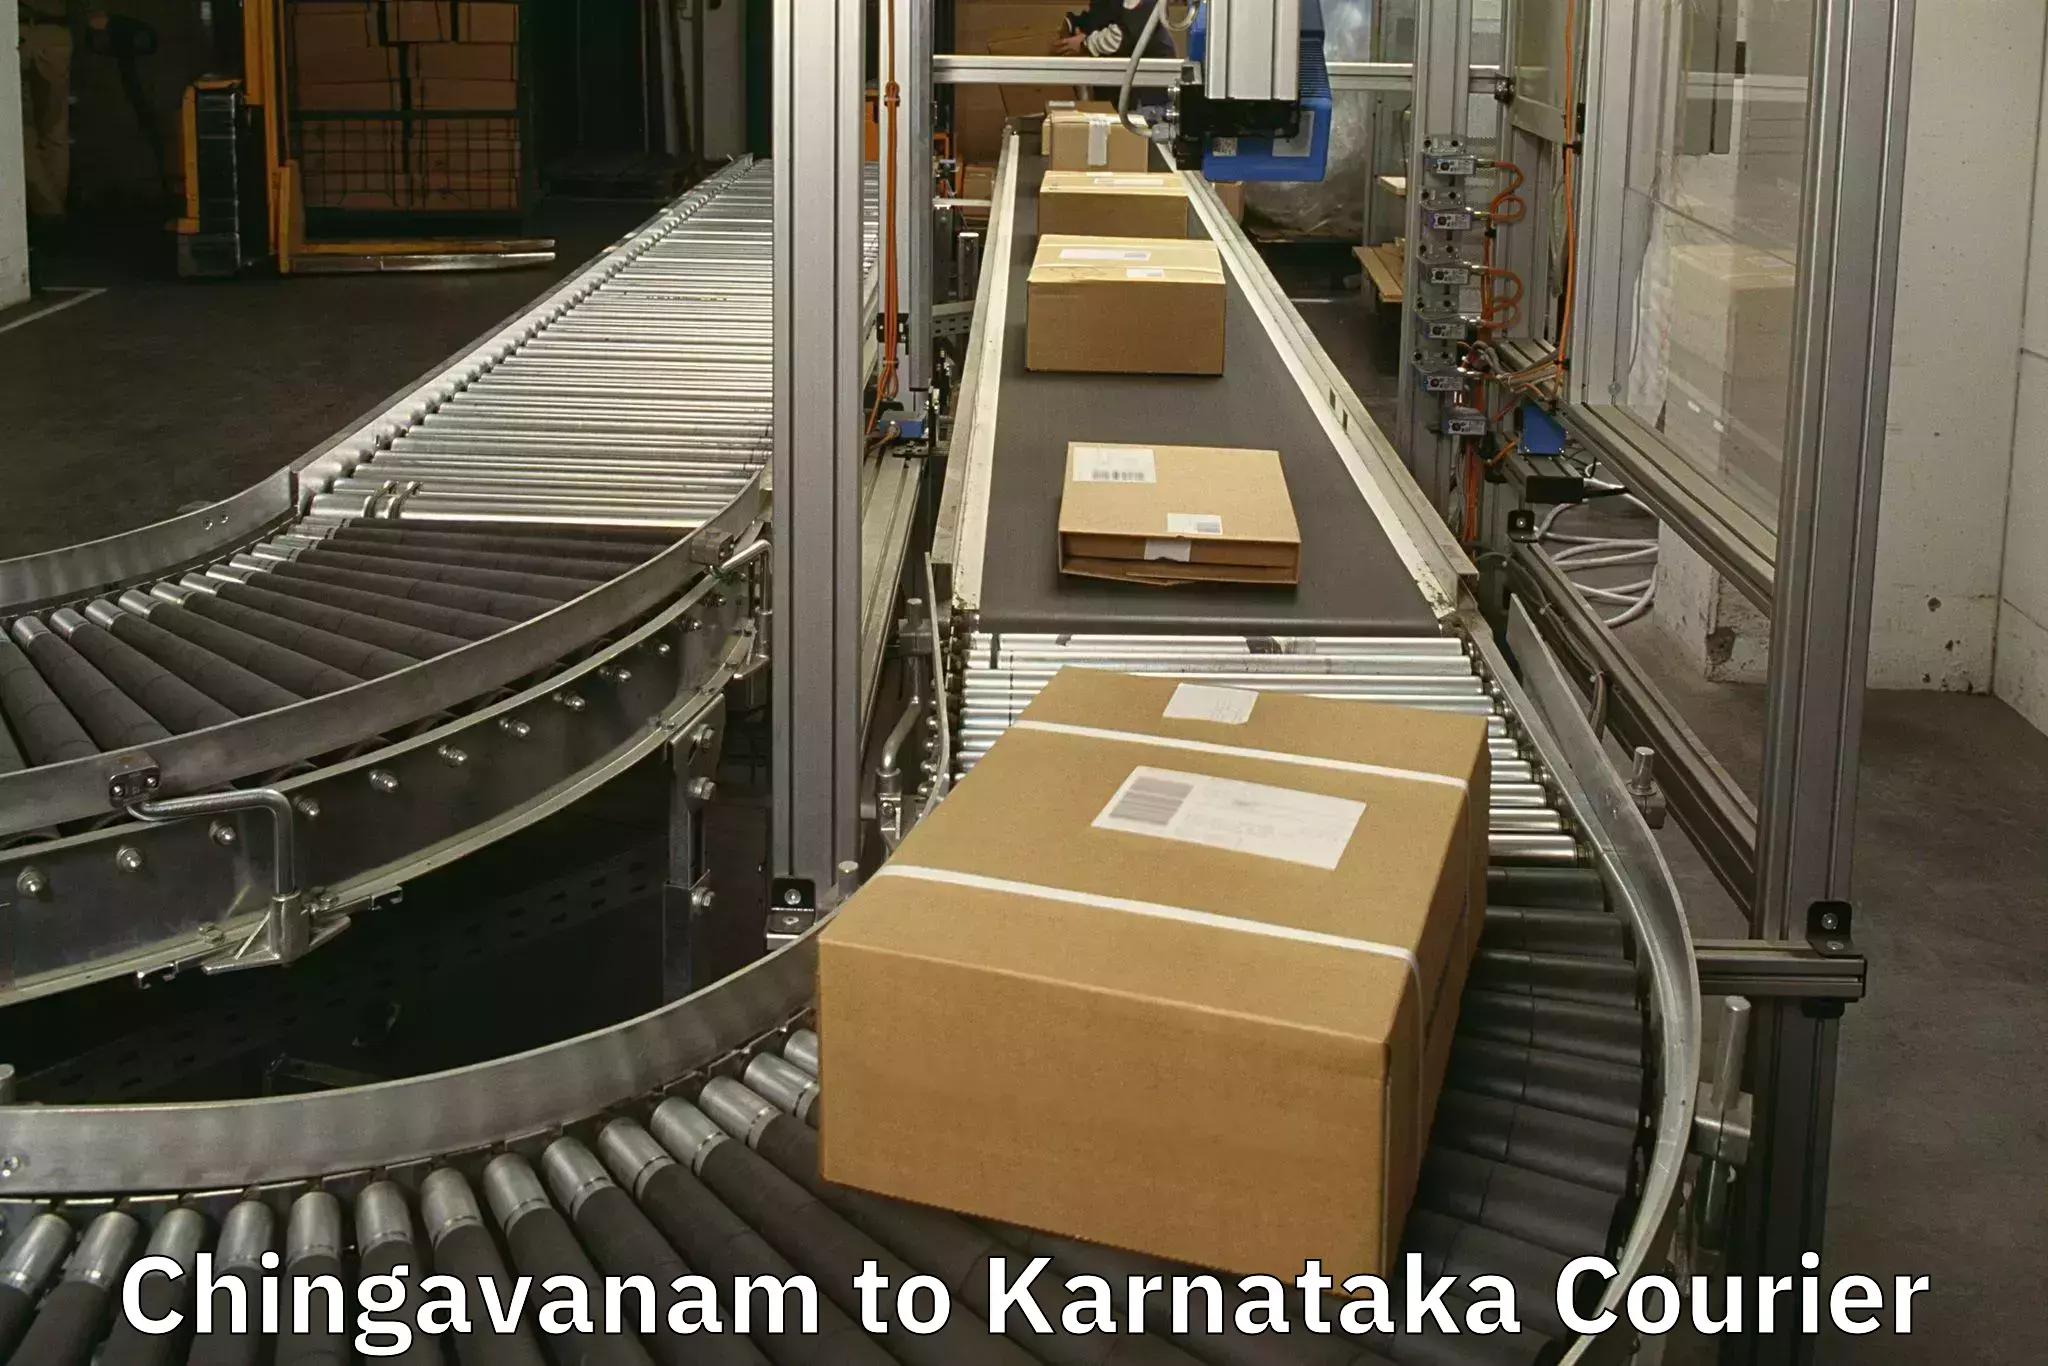 Baggage transport network Chingavanam to Karnataka